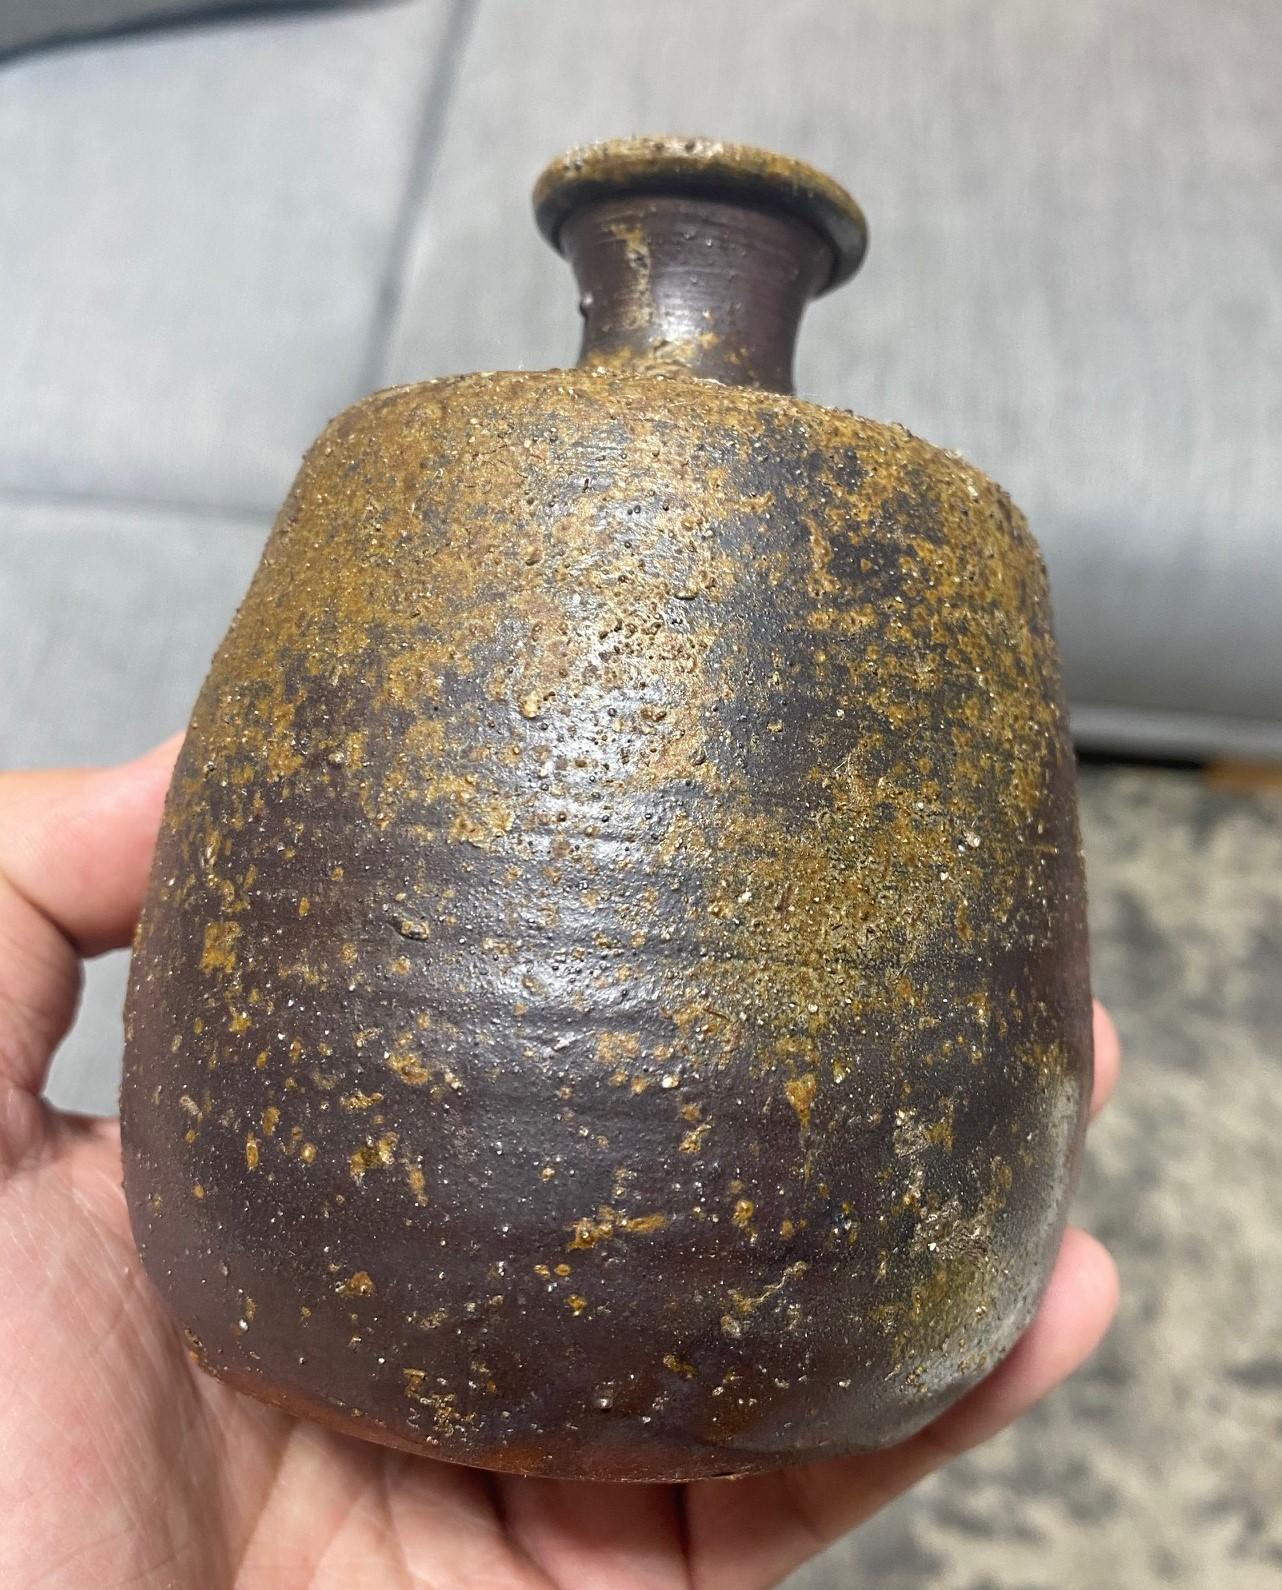 Kaneshige Toyo National Treasure Signed Japanese Bizen Pottery Sake Bottle Vase For Sale 1